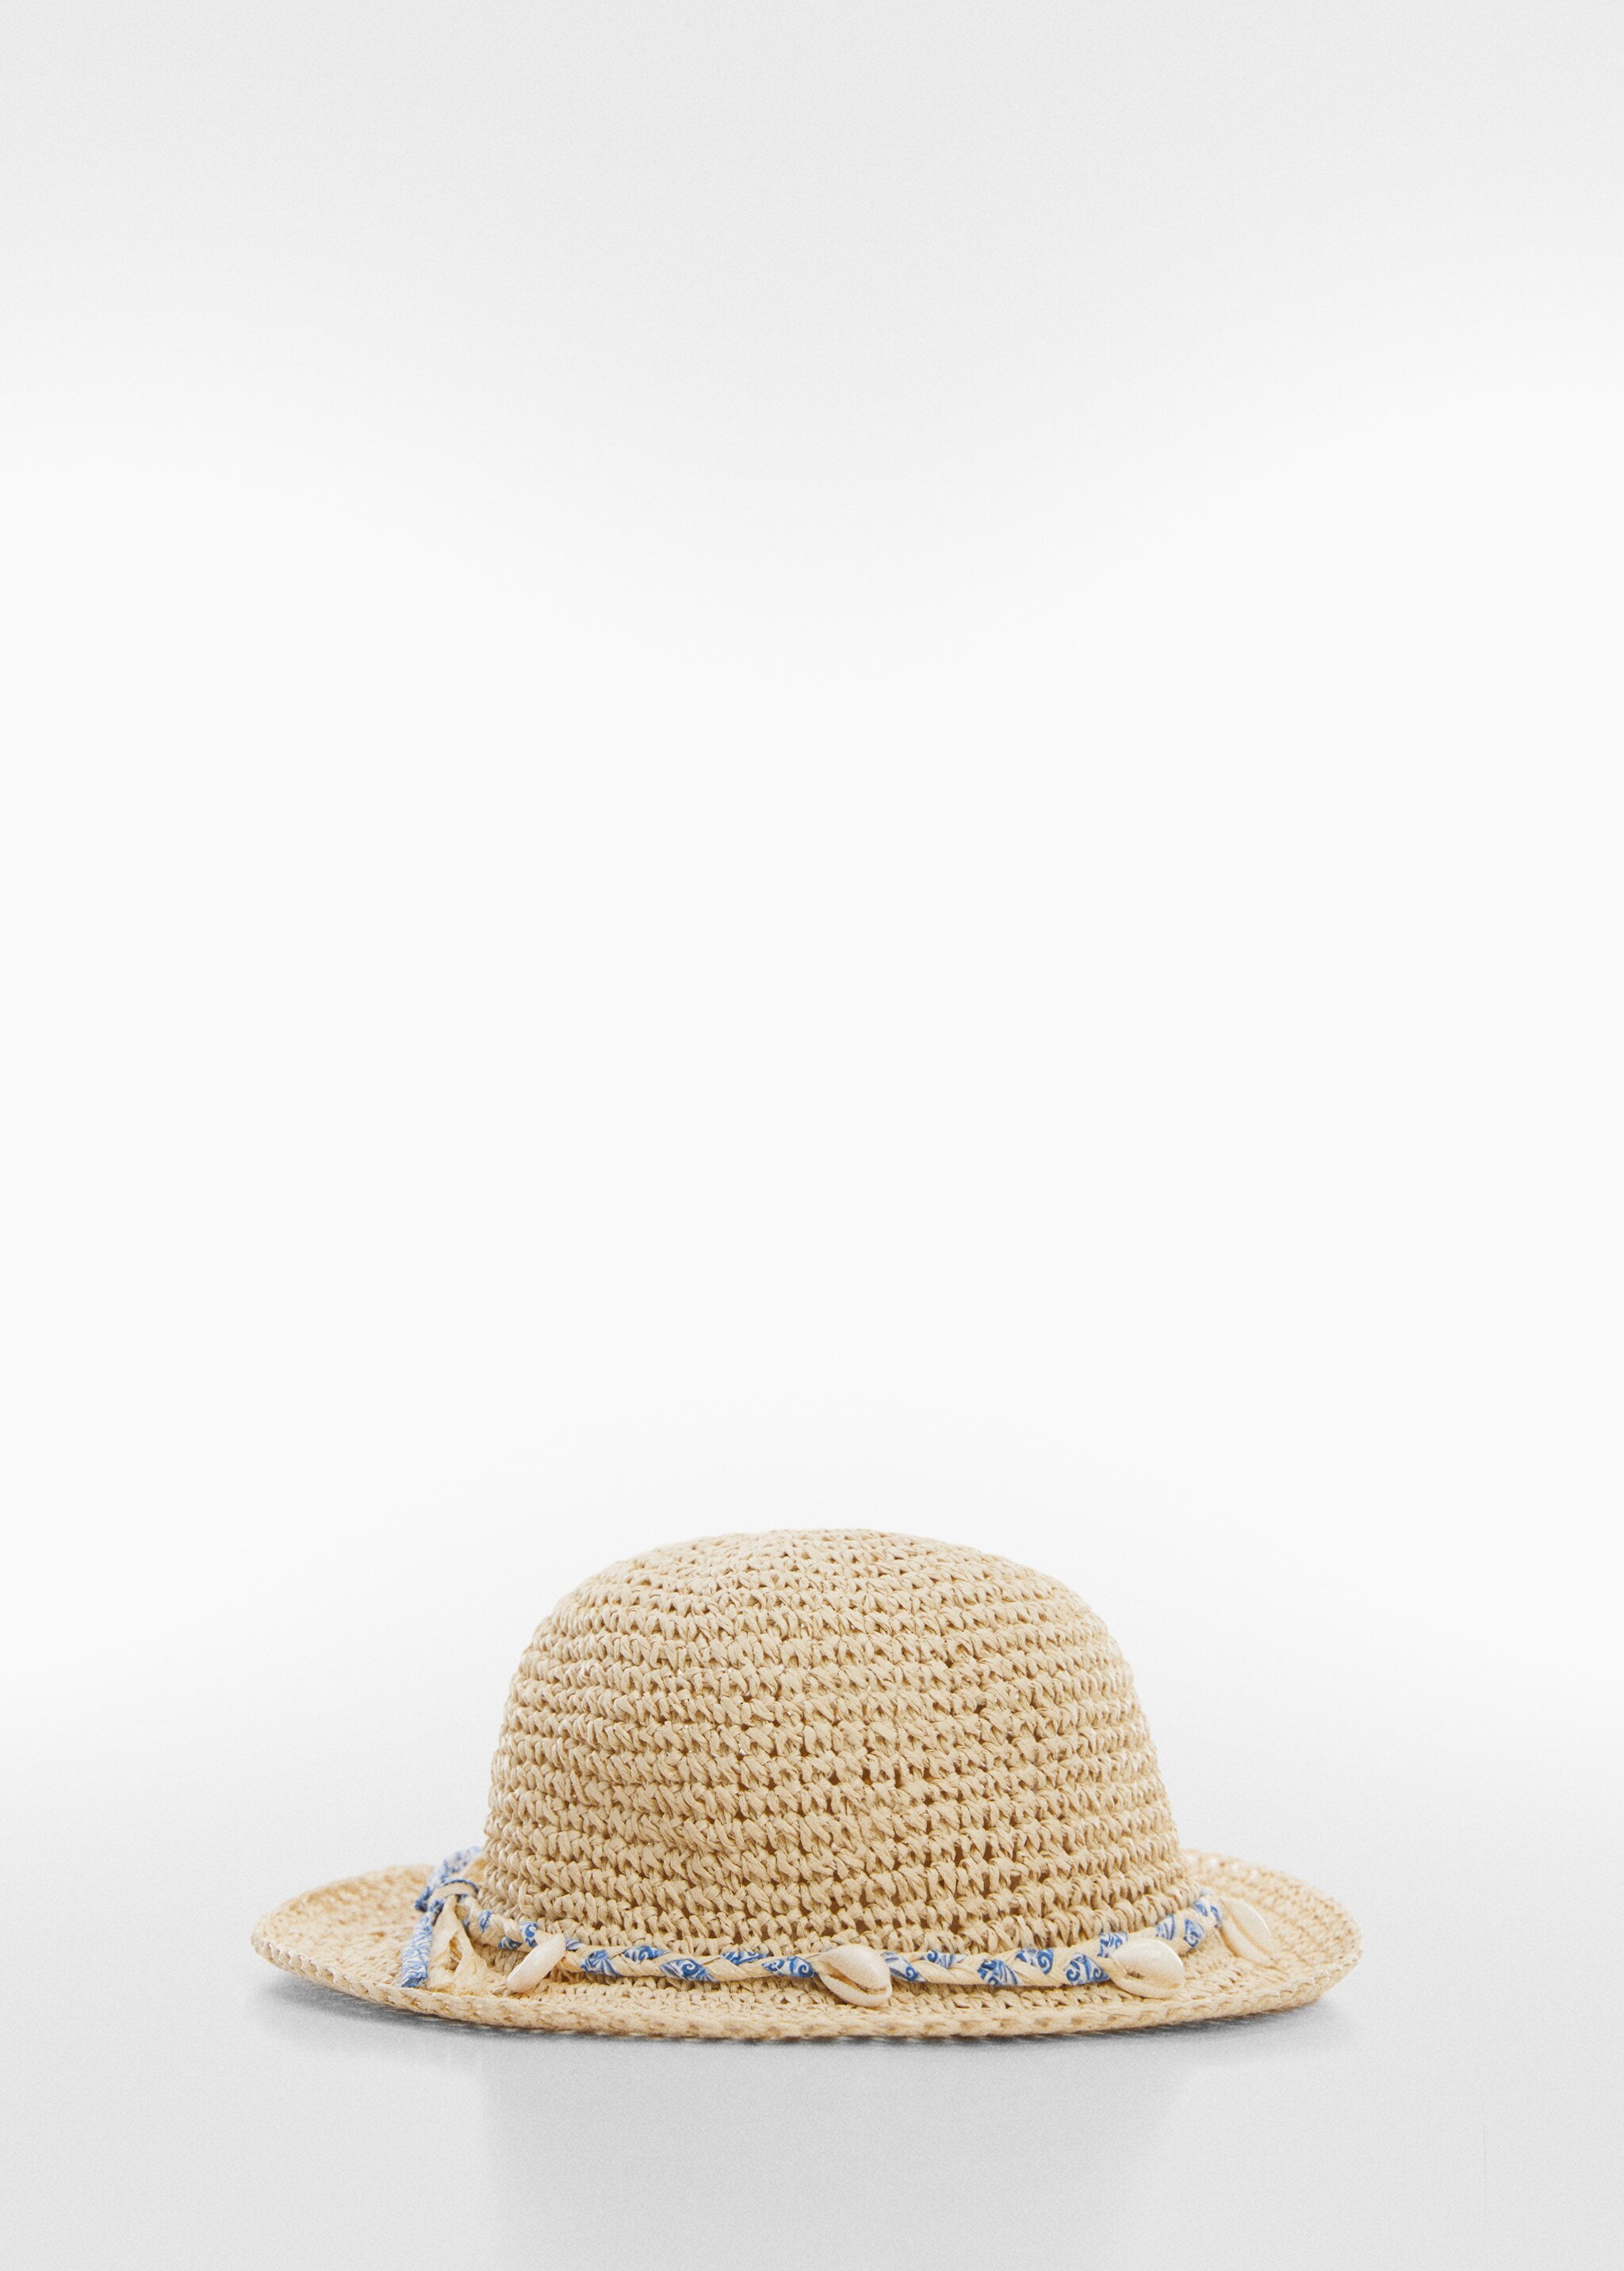 Соломенная шляпа с ракушками - Изделие без модели